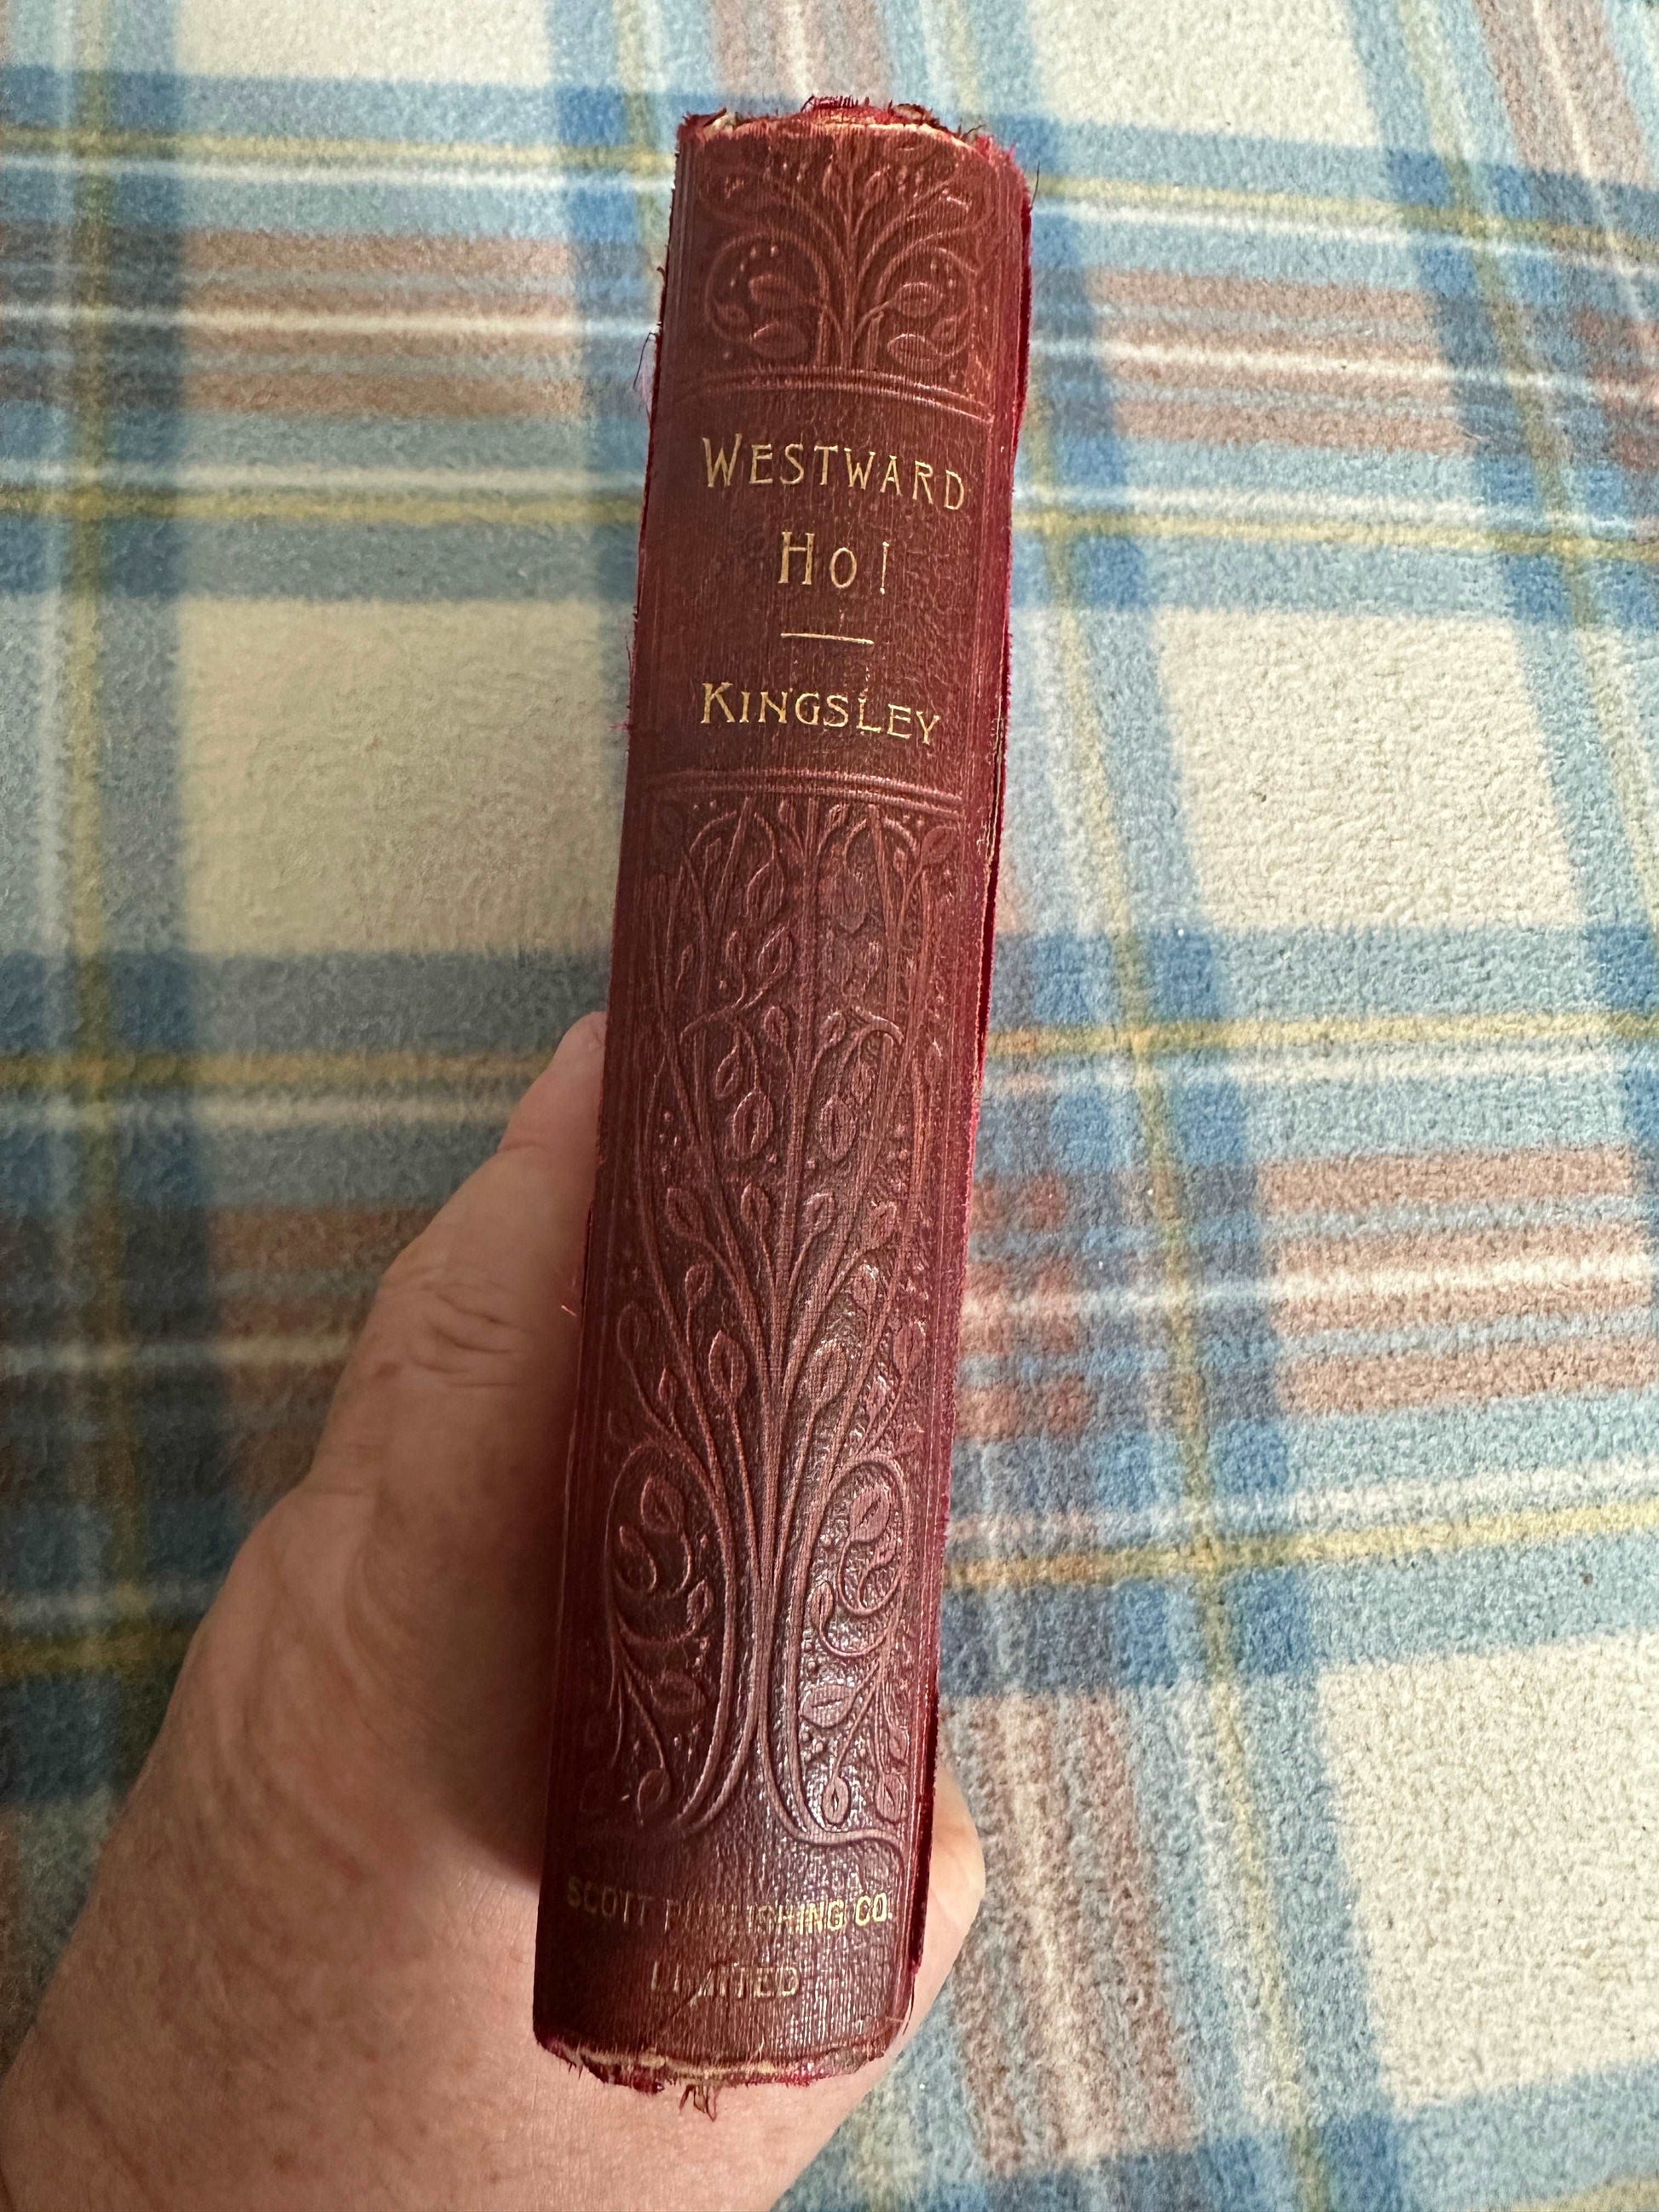 1900 Westward Ho! - Charles Kingsley (Walter Scott Publishing Ltd)